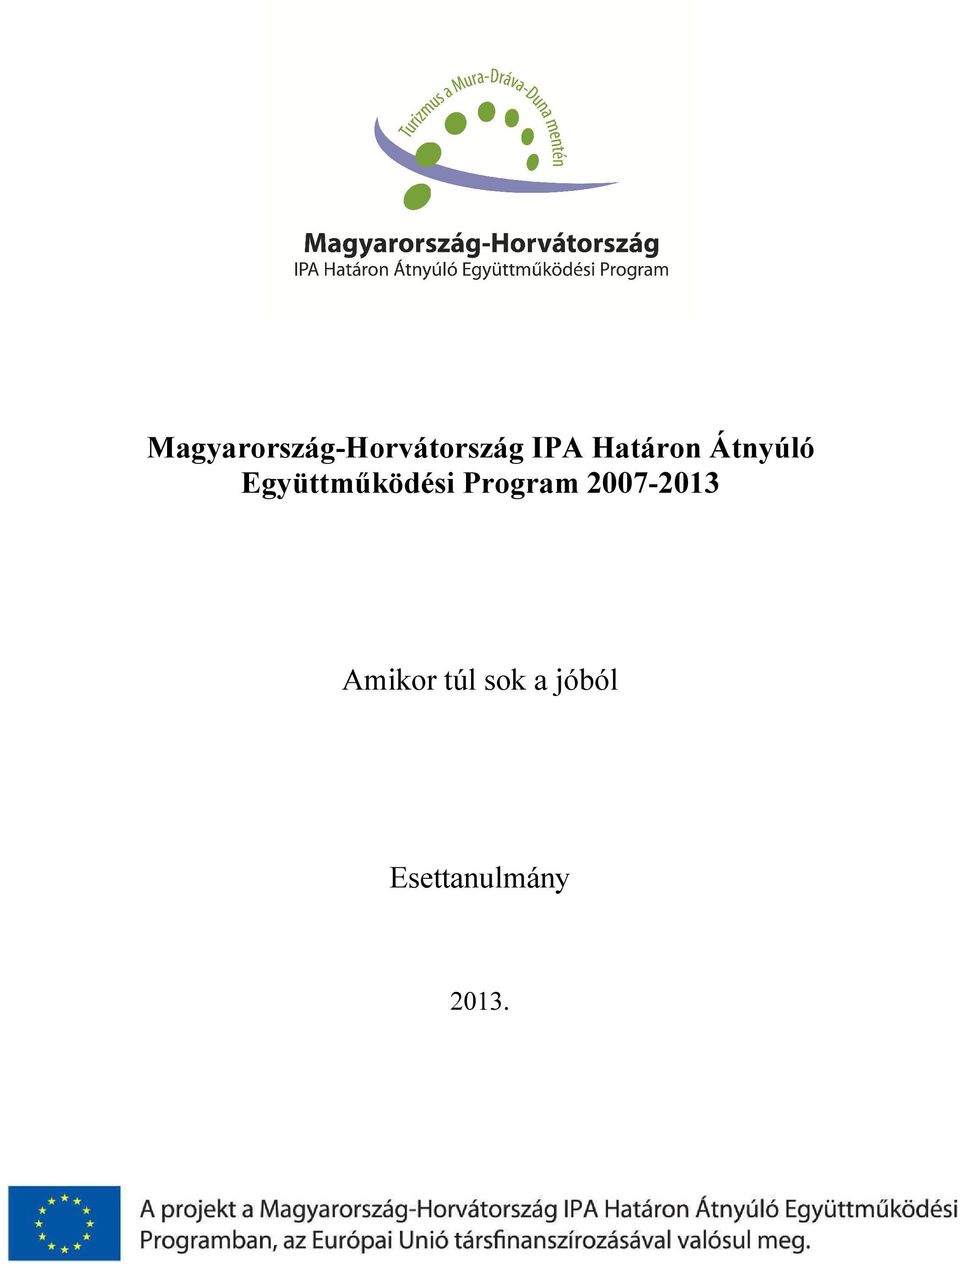 Program 2007-2013 Amikor túl